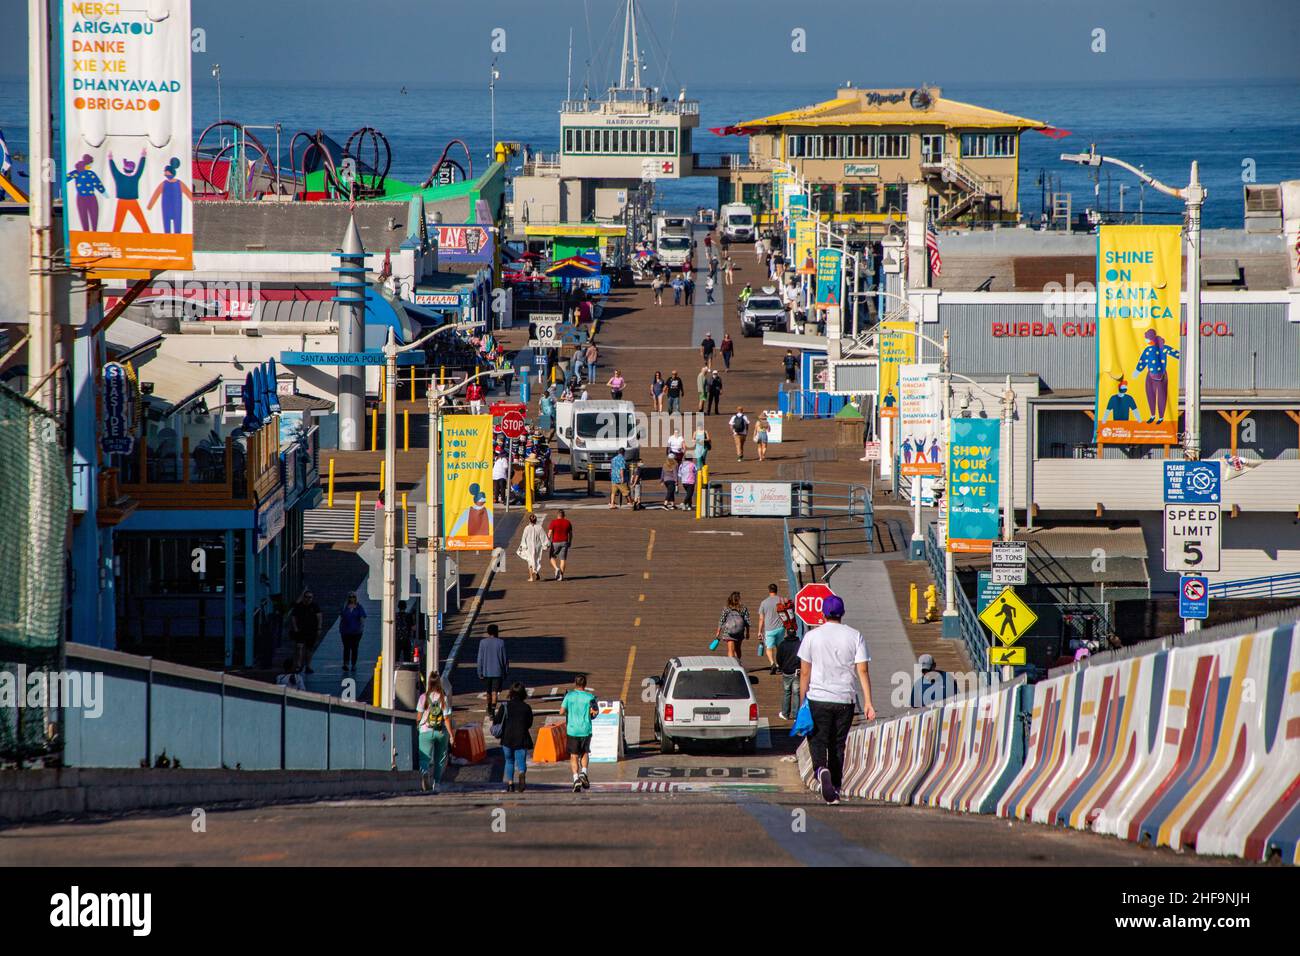 Am frühen Samstagmorgen am Santa Monica Pier versorgen Deliverymen lokale Händler, wenn frühe Touristengruppen ankommen. Stockfoto